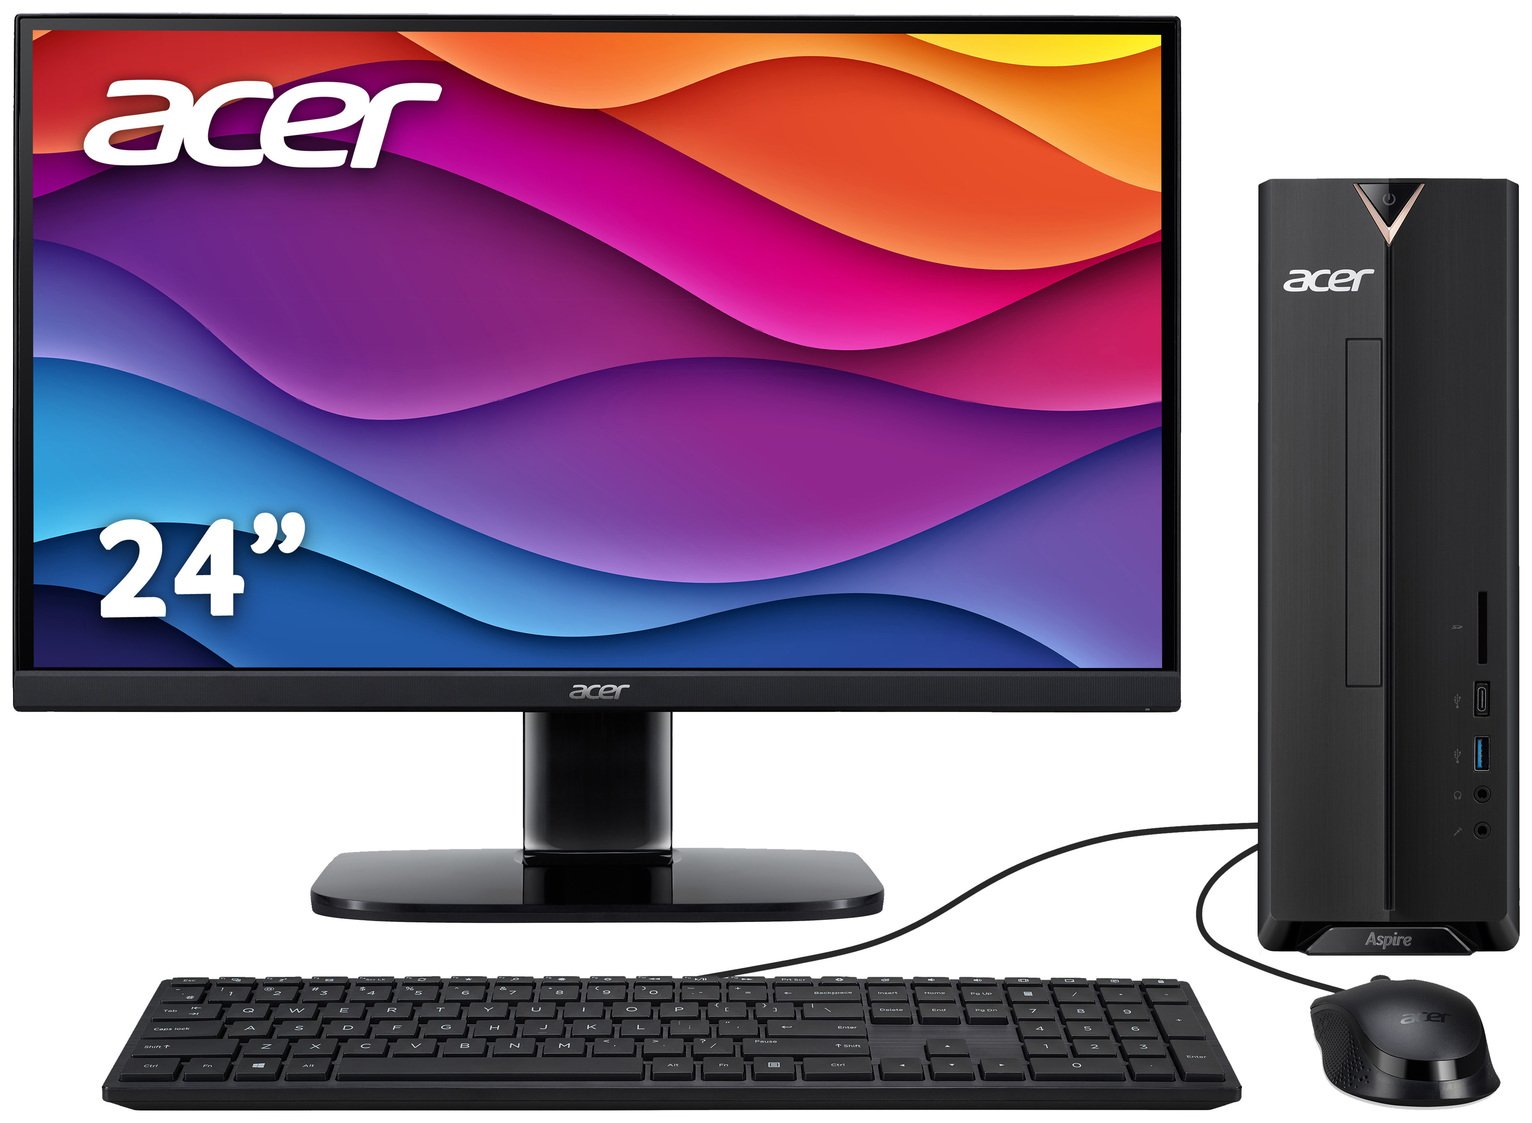 Acer XC-840 Pentium 8GB 256GB Desktop PC 24in Monitor Bundle